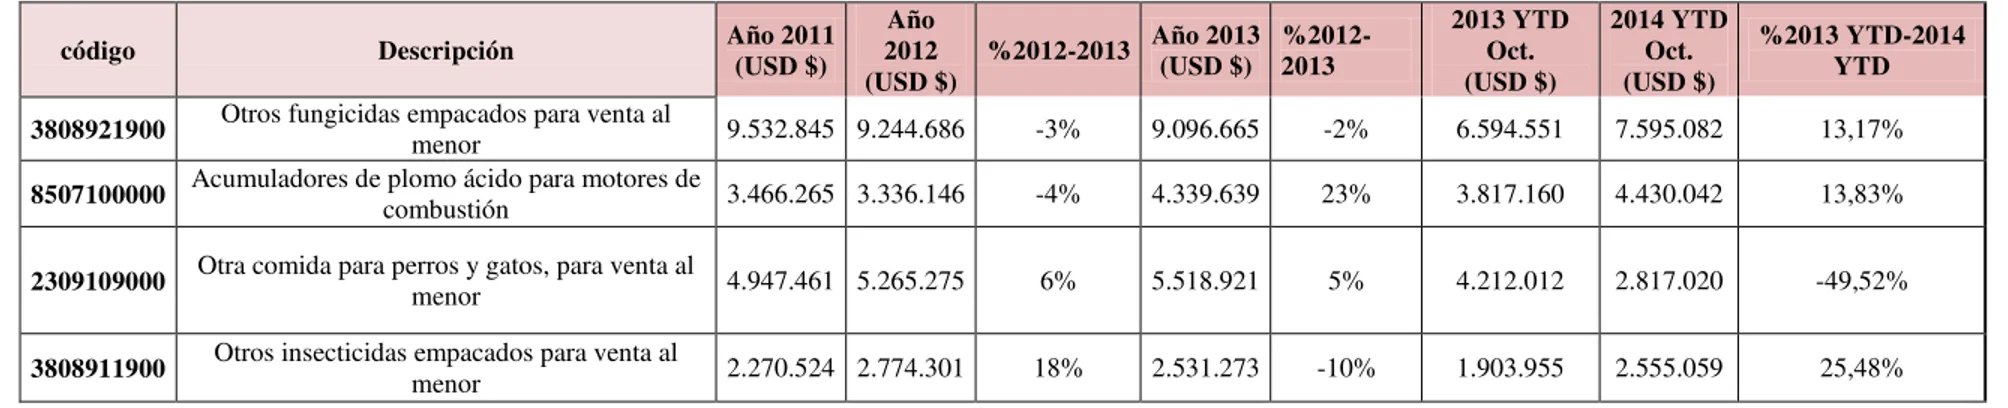 Tabla 12: Principales productos exportados por Atlántico a Perú 2011-2014 YTD (USD $) 